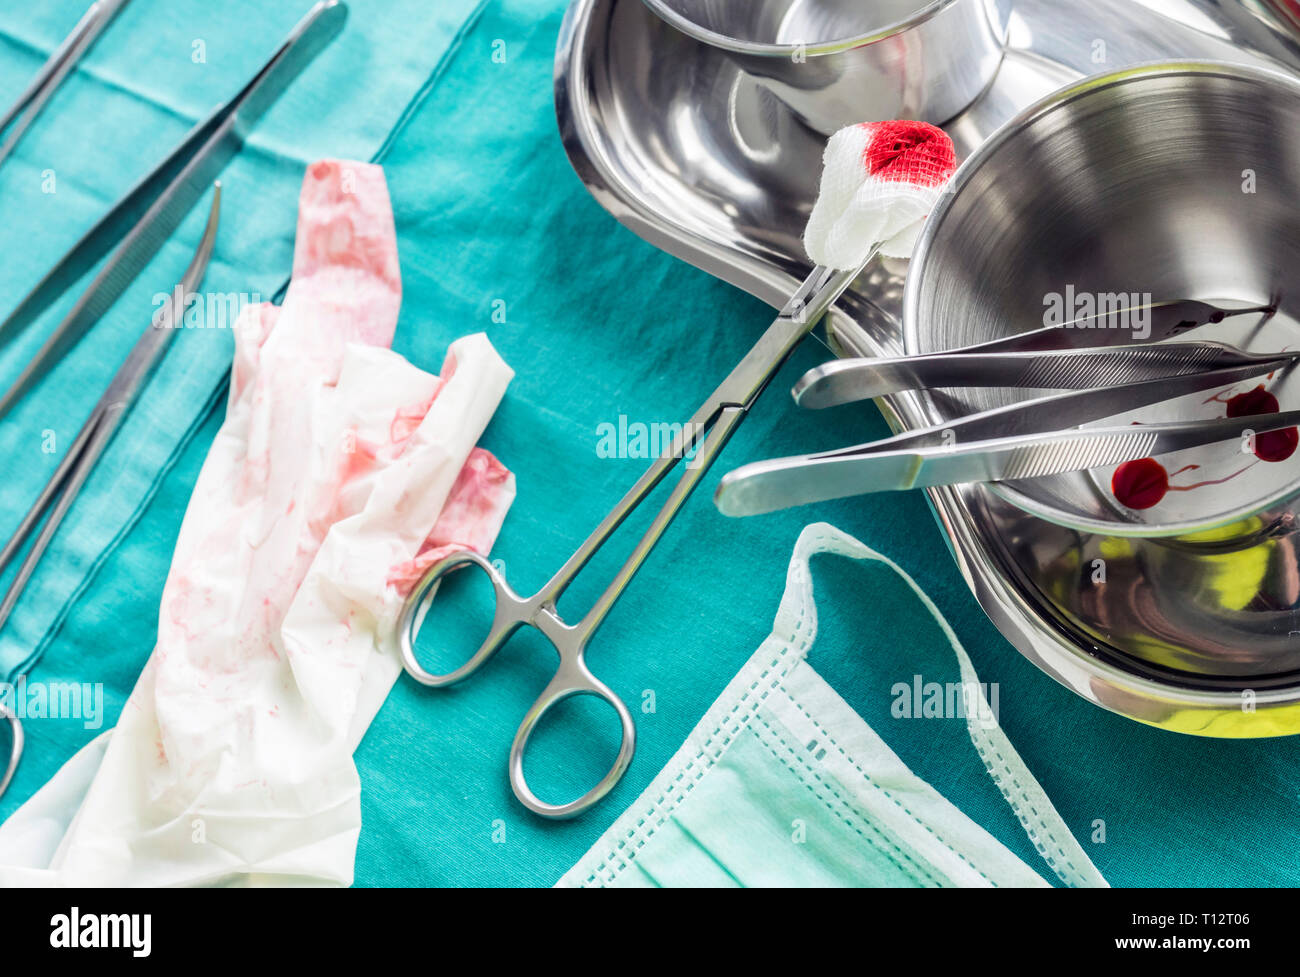 Chirurgische Schere mit torunda mit Blut auf einem Tablett Metall in einem Operationssaal, Zusammensetzung horizontale, konzeptionelle Bild getränkt Stockfoto